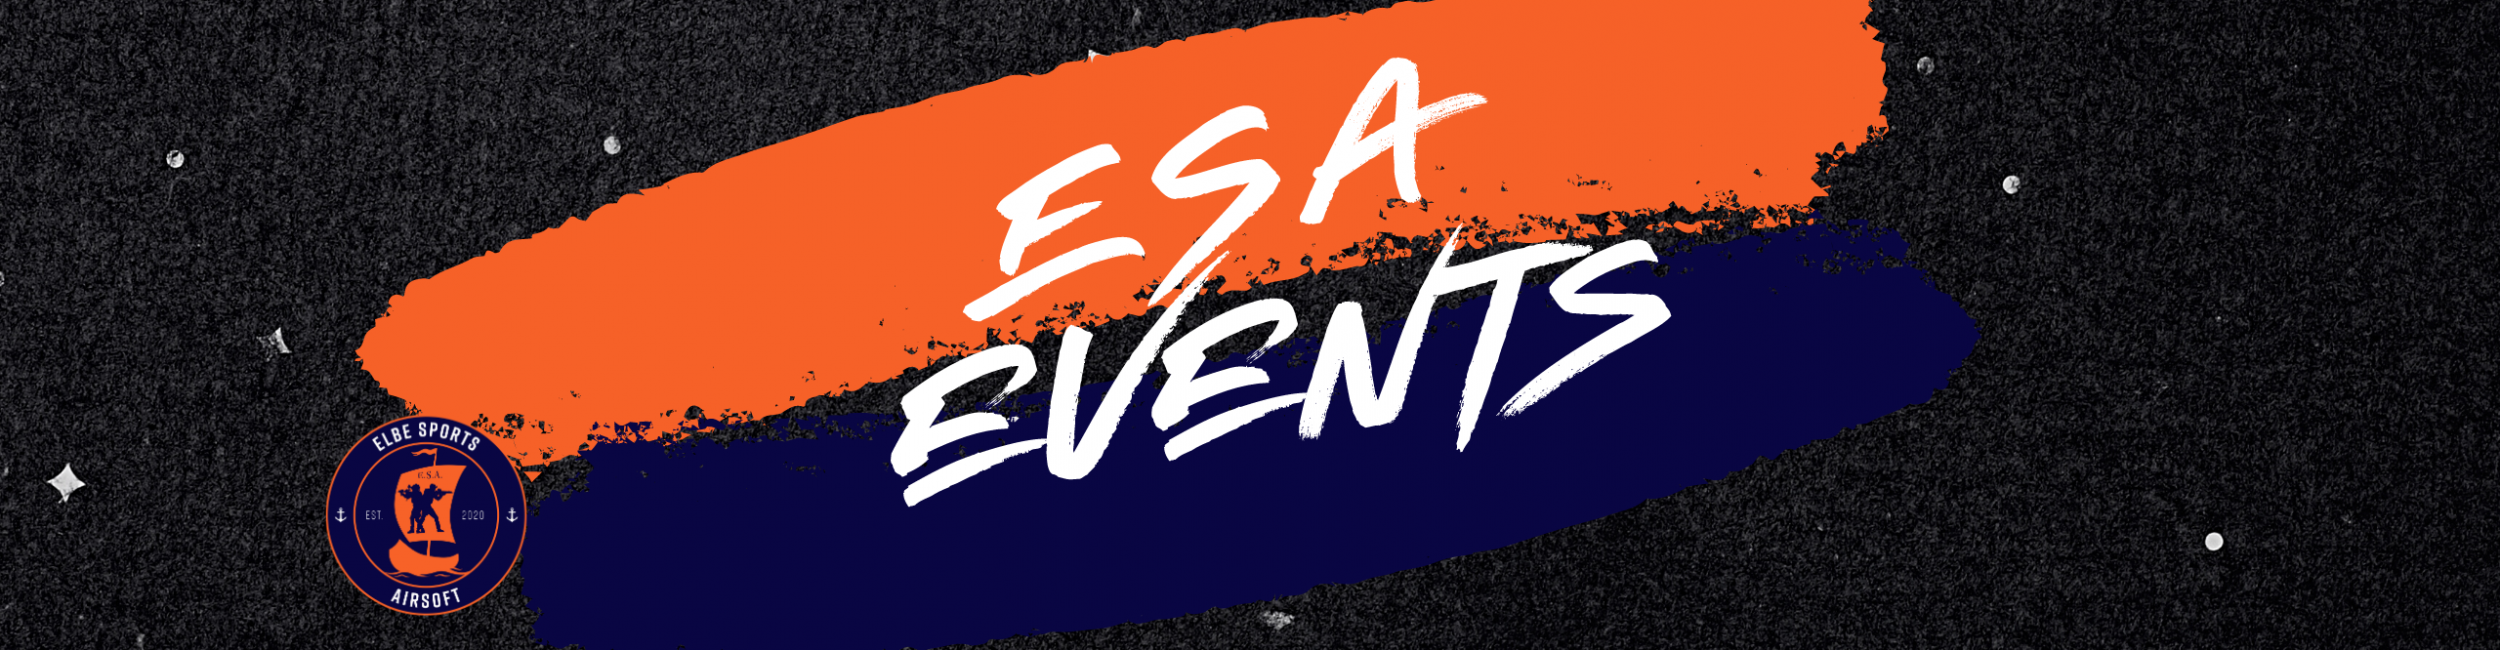 esa-events-2